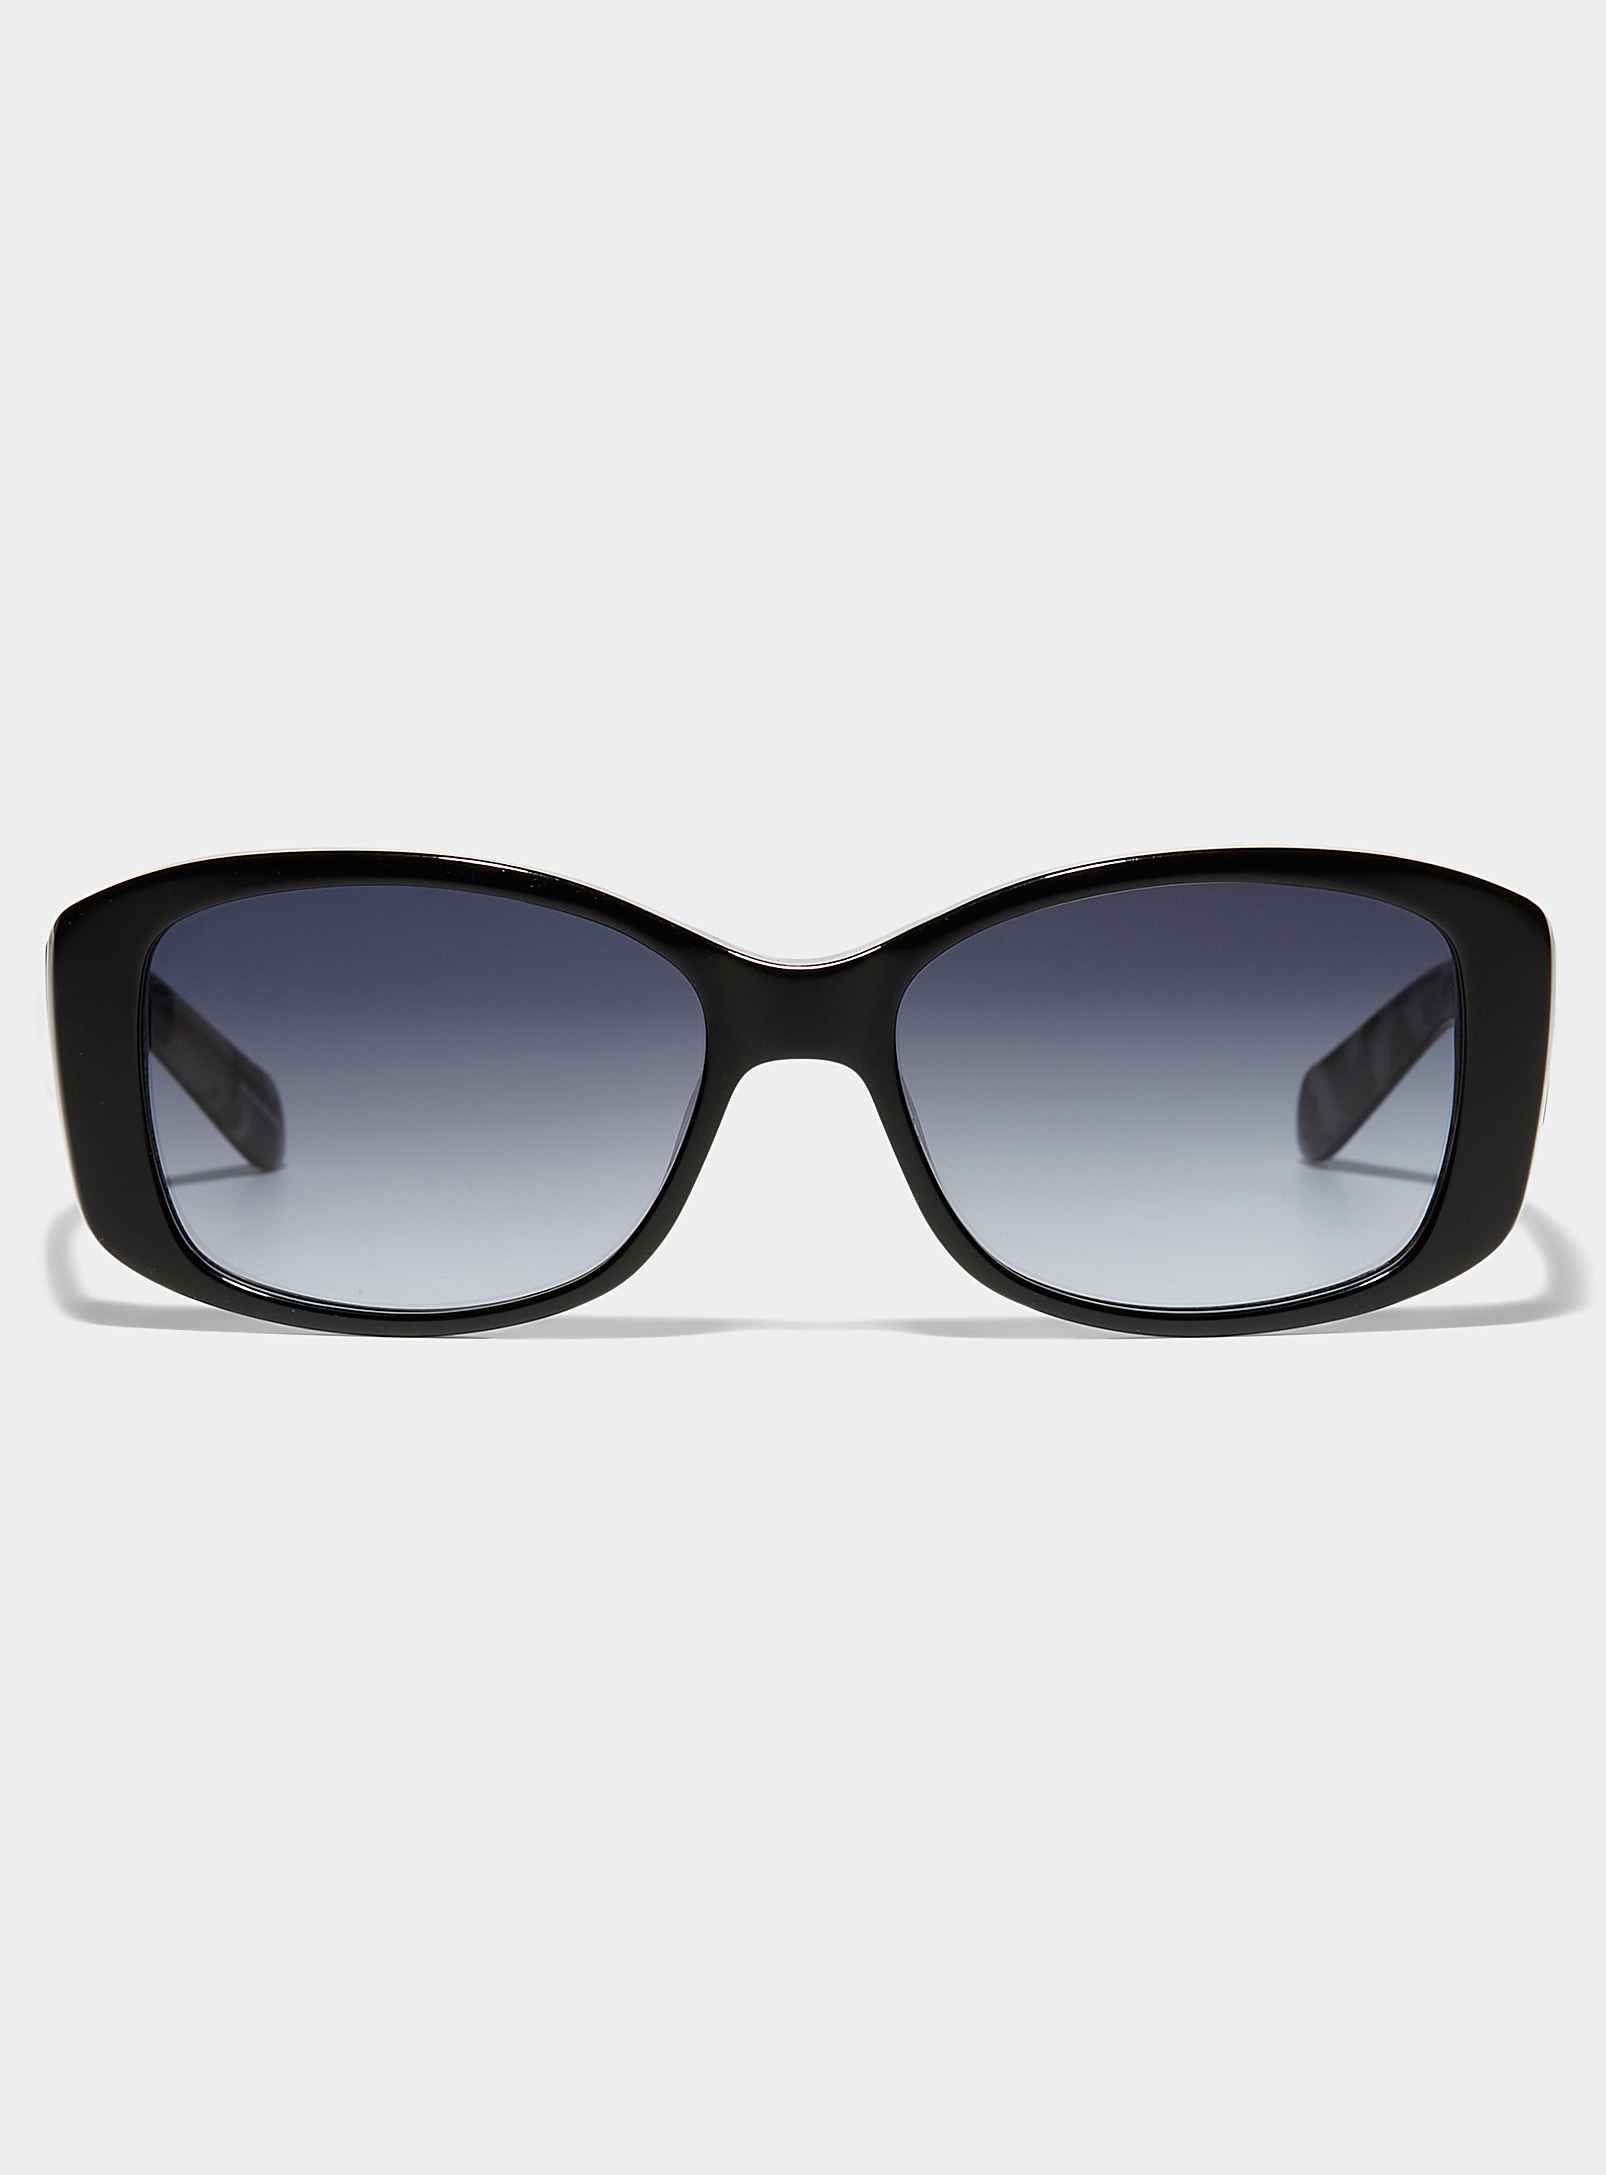 Fossil - Women's Flecked underside rectangular sunglasses